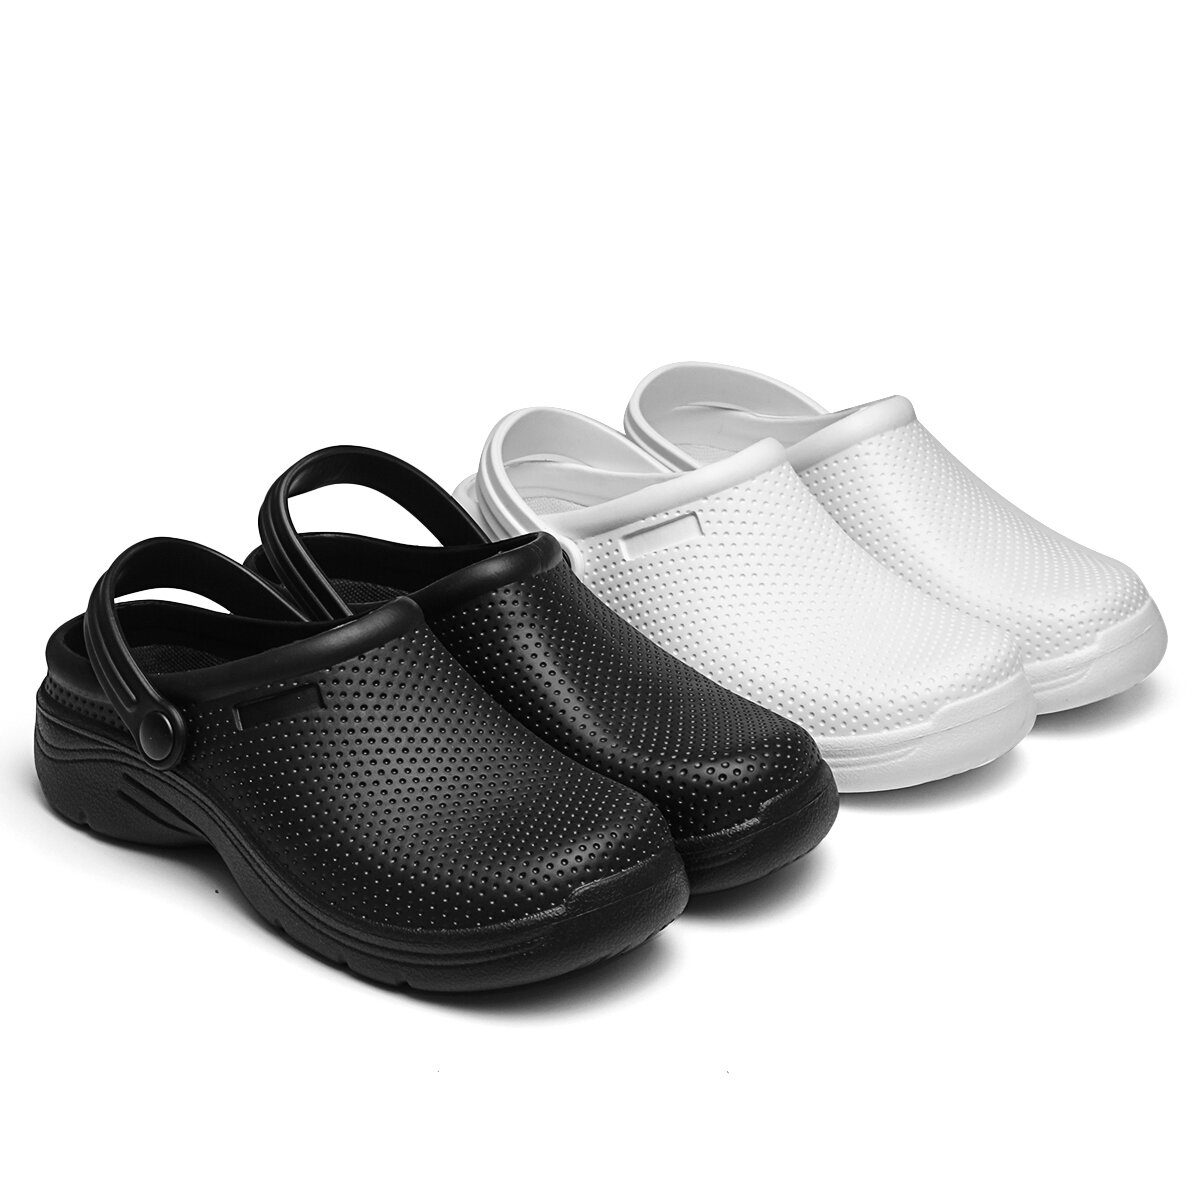 AtreGo EVA Sommer Sandalen Sicherheitsschuhe Wasserdicht Rutschfeste Outdoor Indoor Strand Schuhe Für Frauen & Männer.